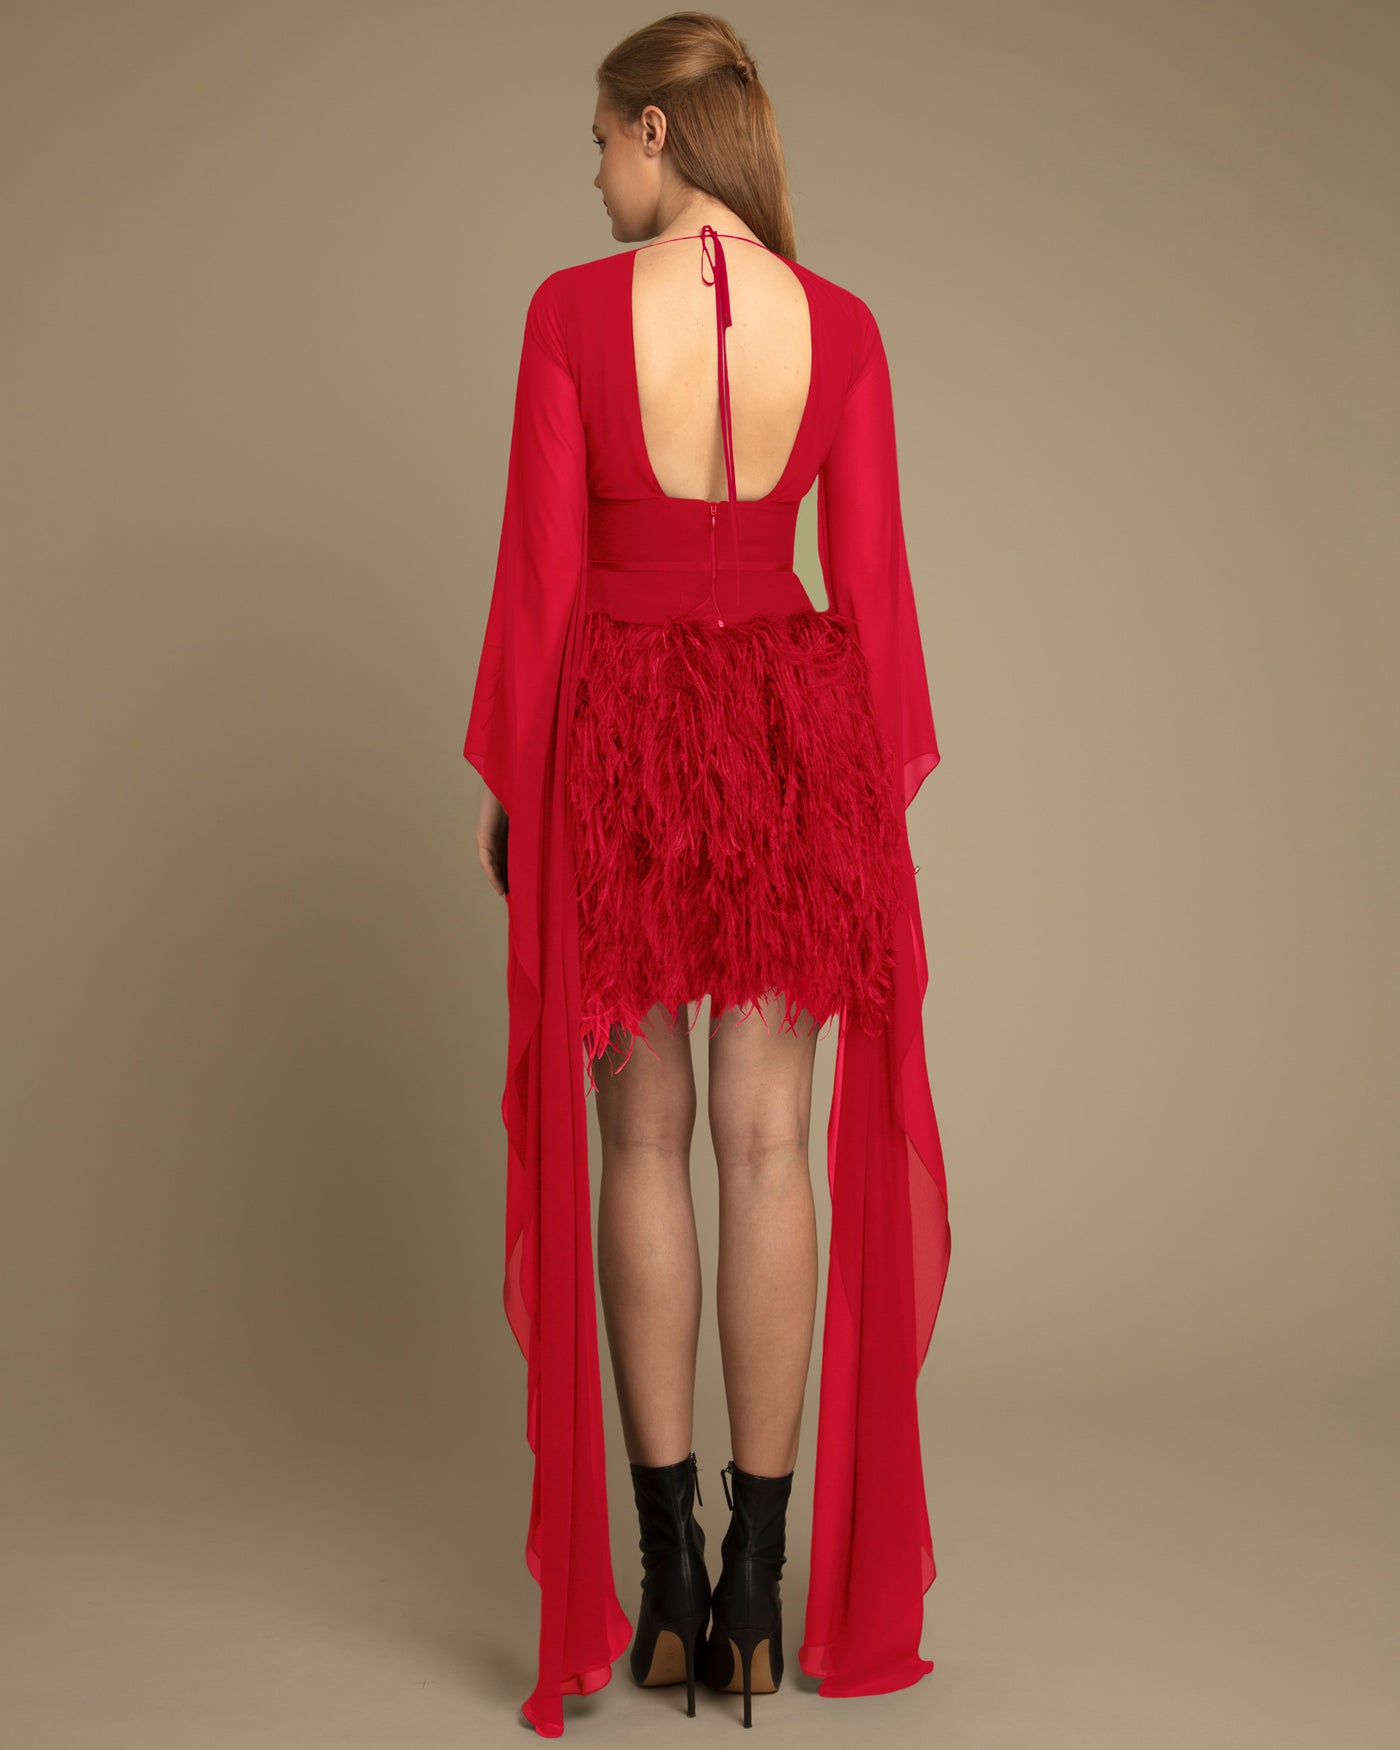 V-Neck Long Sleeved Short Red Dress